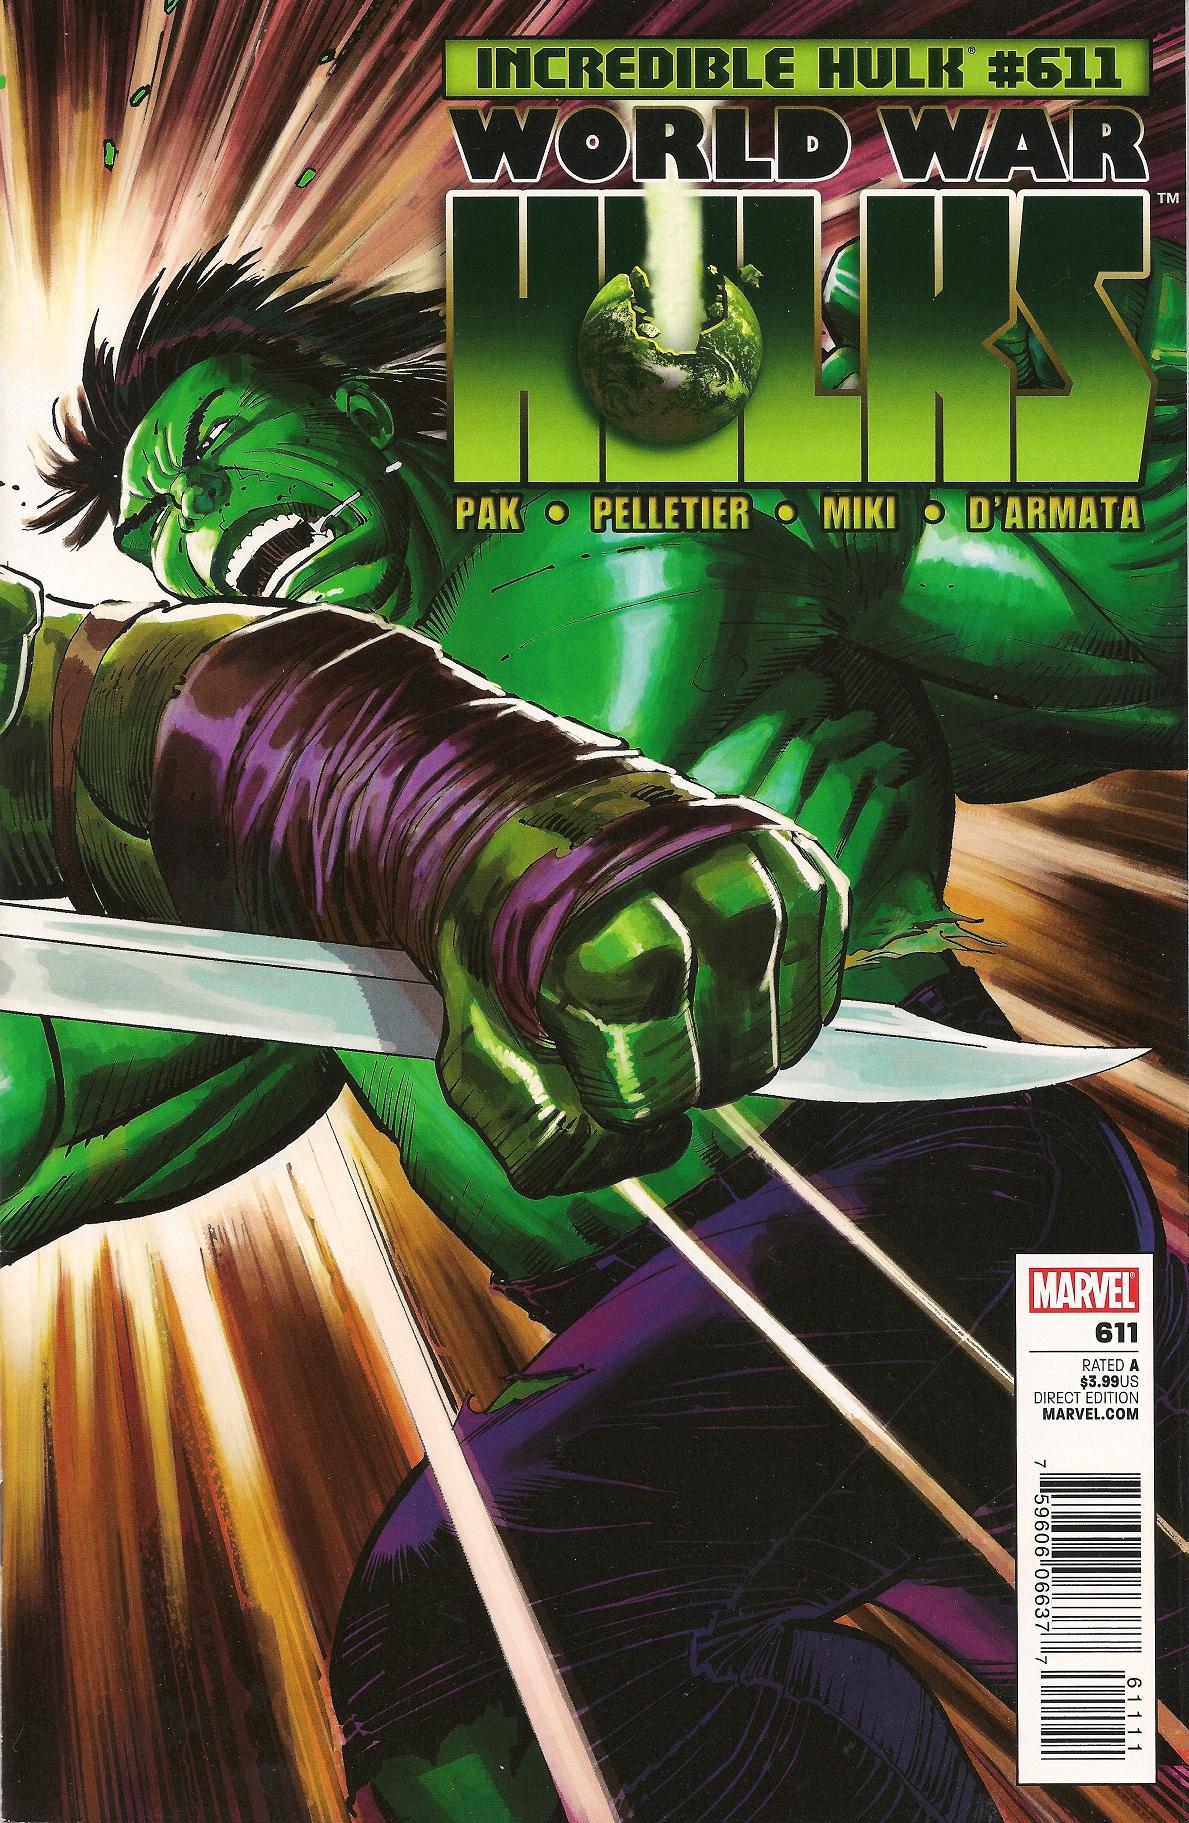 The Incredible Hulk Vol. 1 #611